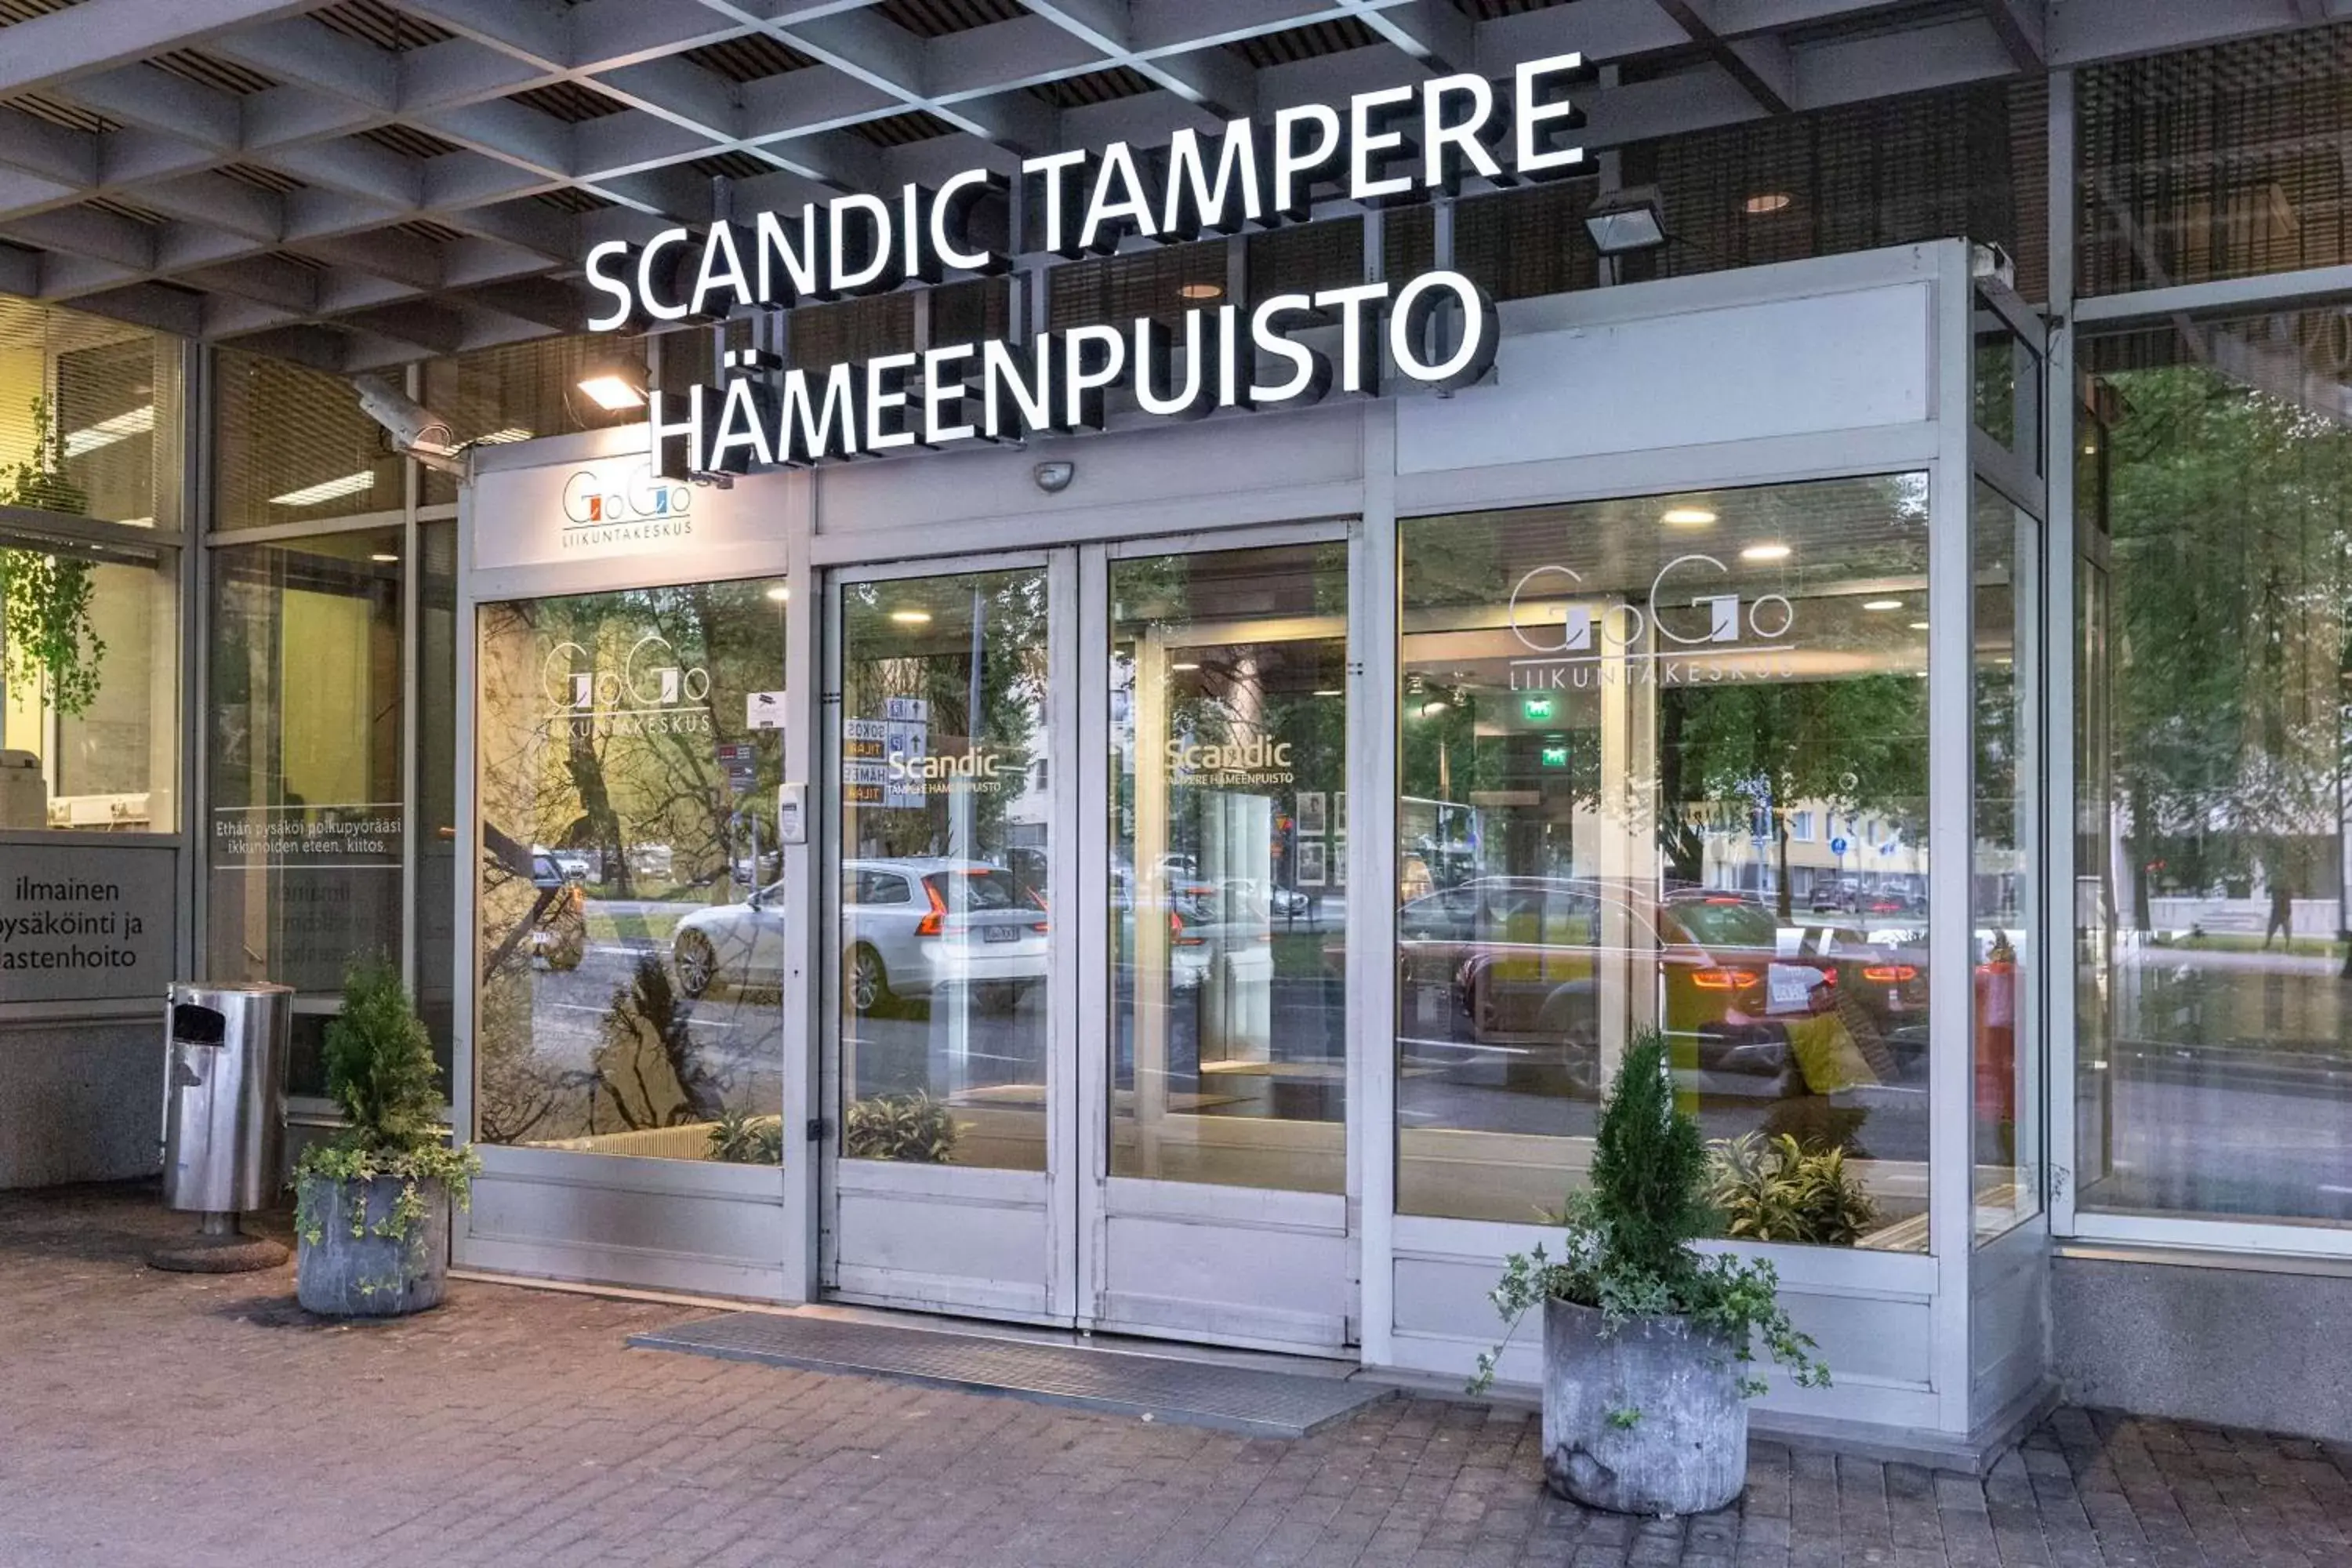 Property building in Scandic Tampere Hämeenpuisto